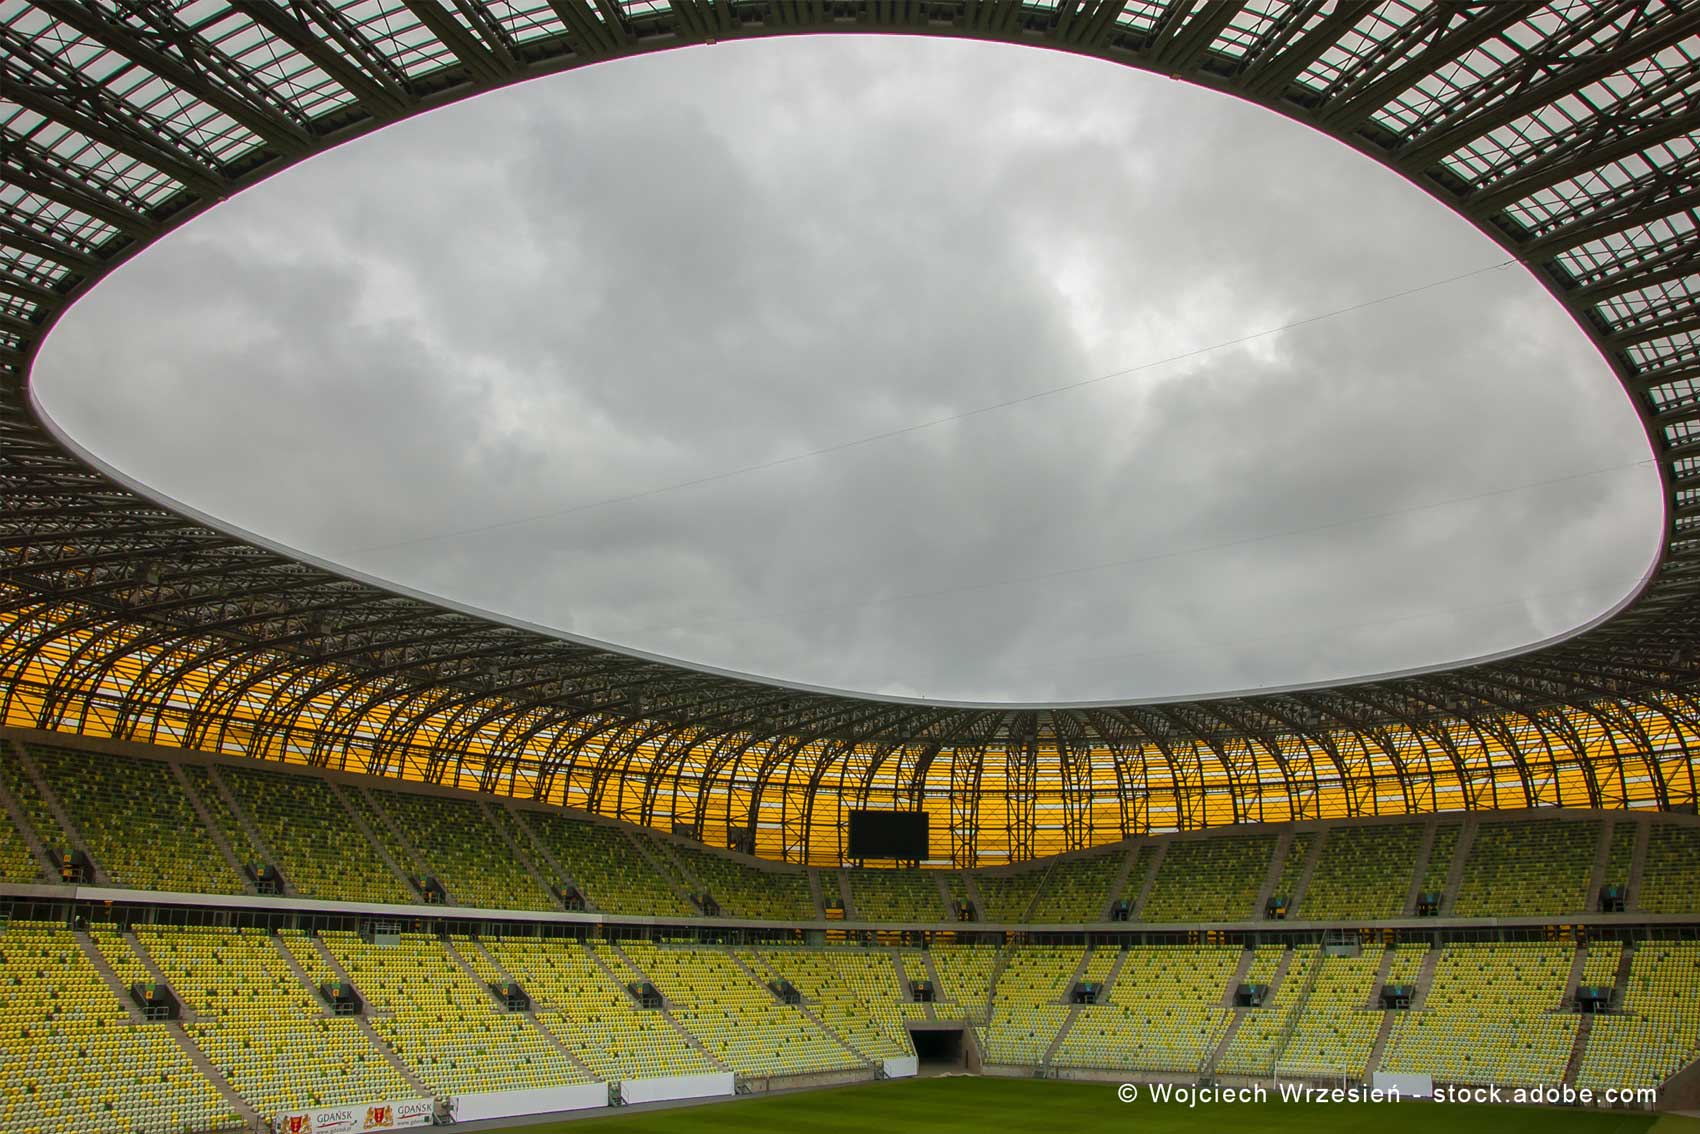 The Stadium in Gdansk inside